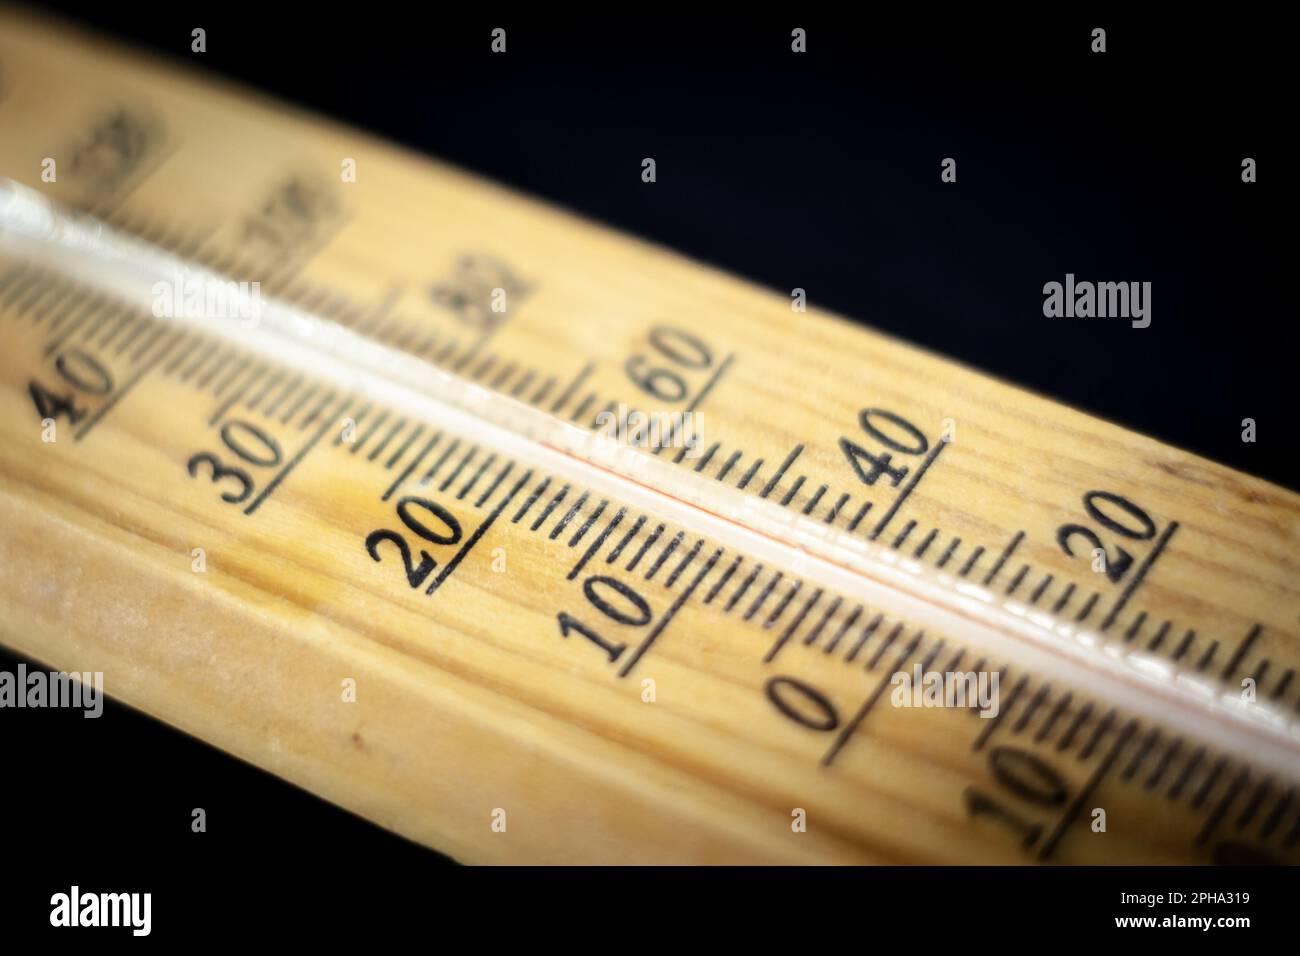 Abbildung: Ein Thermometer zur Messung der Raumtemperatur, ein Holzthermometer, das 20 Grad celsius anzeigt, die empfohlene Temperatur für den Innenbereich Stockfoto